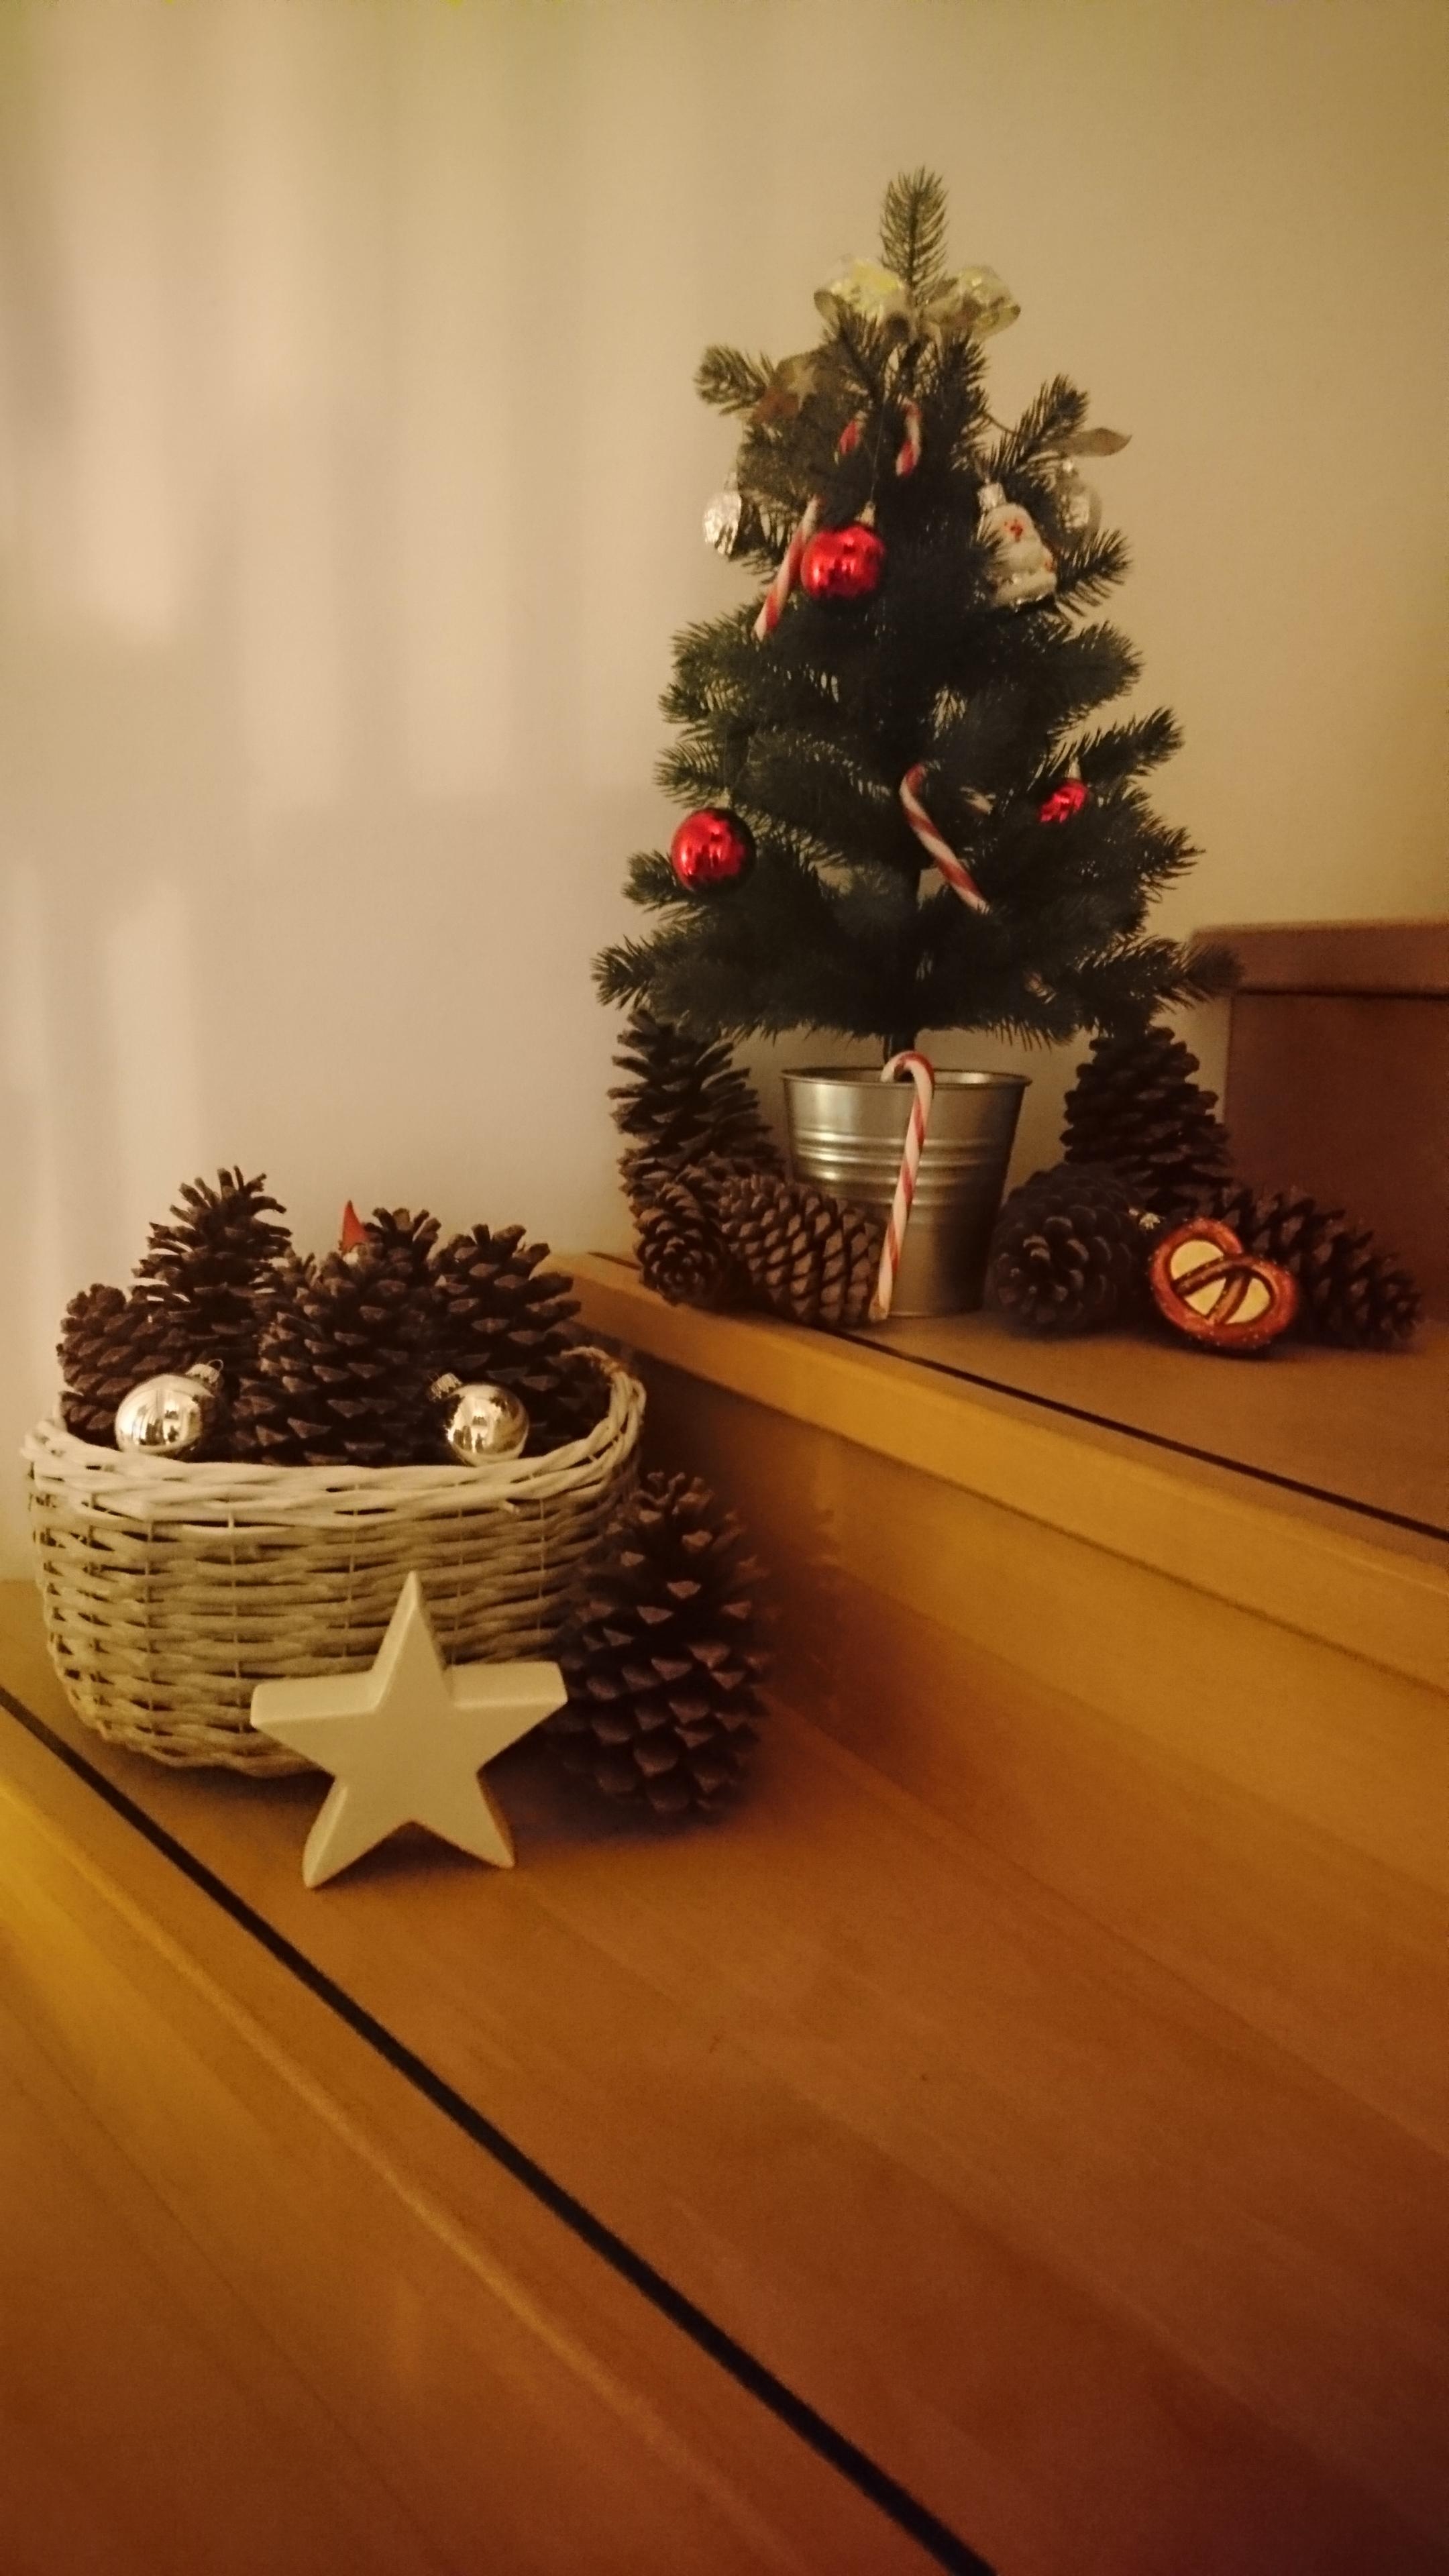 Weihnachtsbäumchen...
...und die Breze 😊🎄

#Weihnachtsbaum
#Weihnachtsdeko #Zapfen 